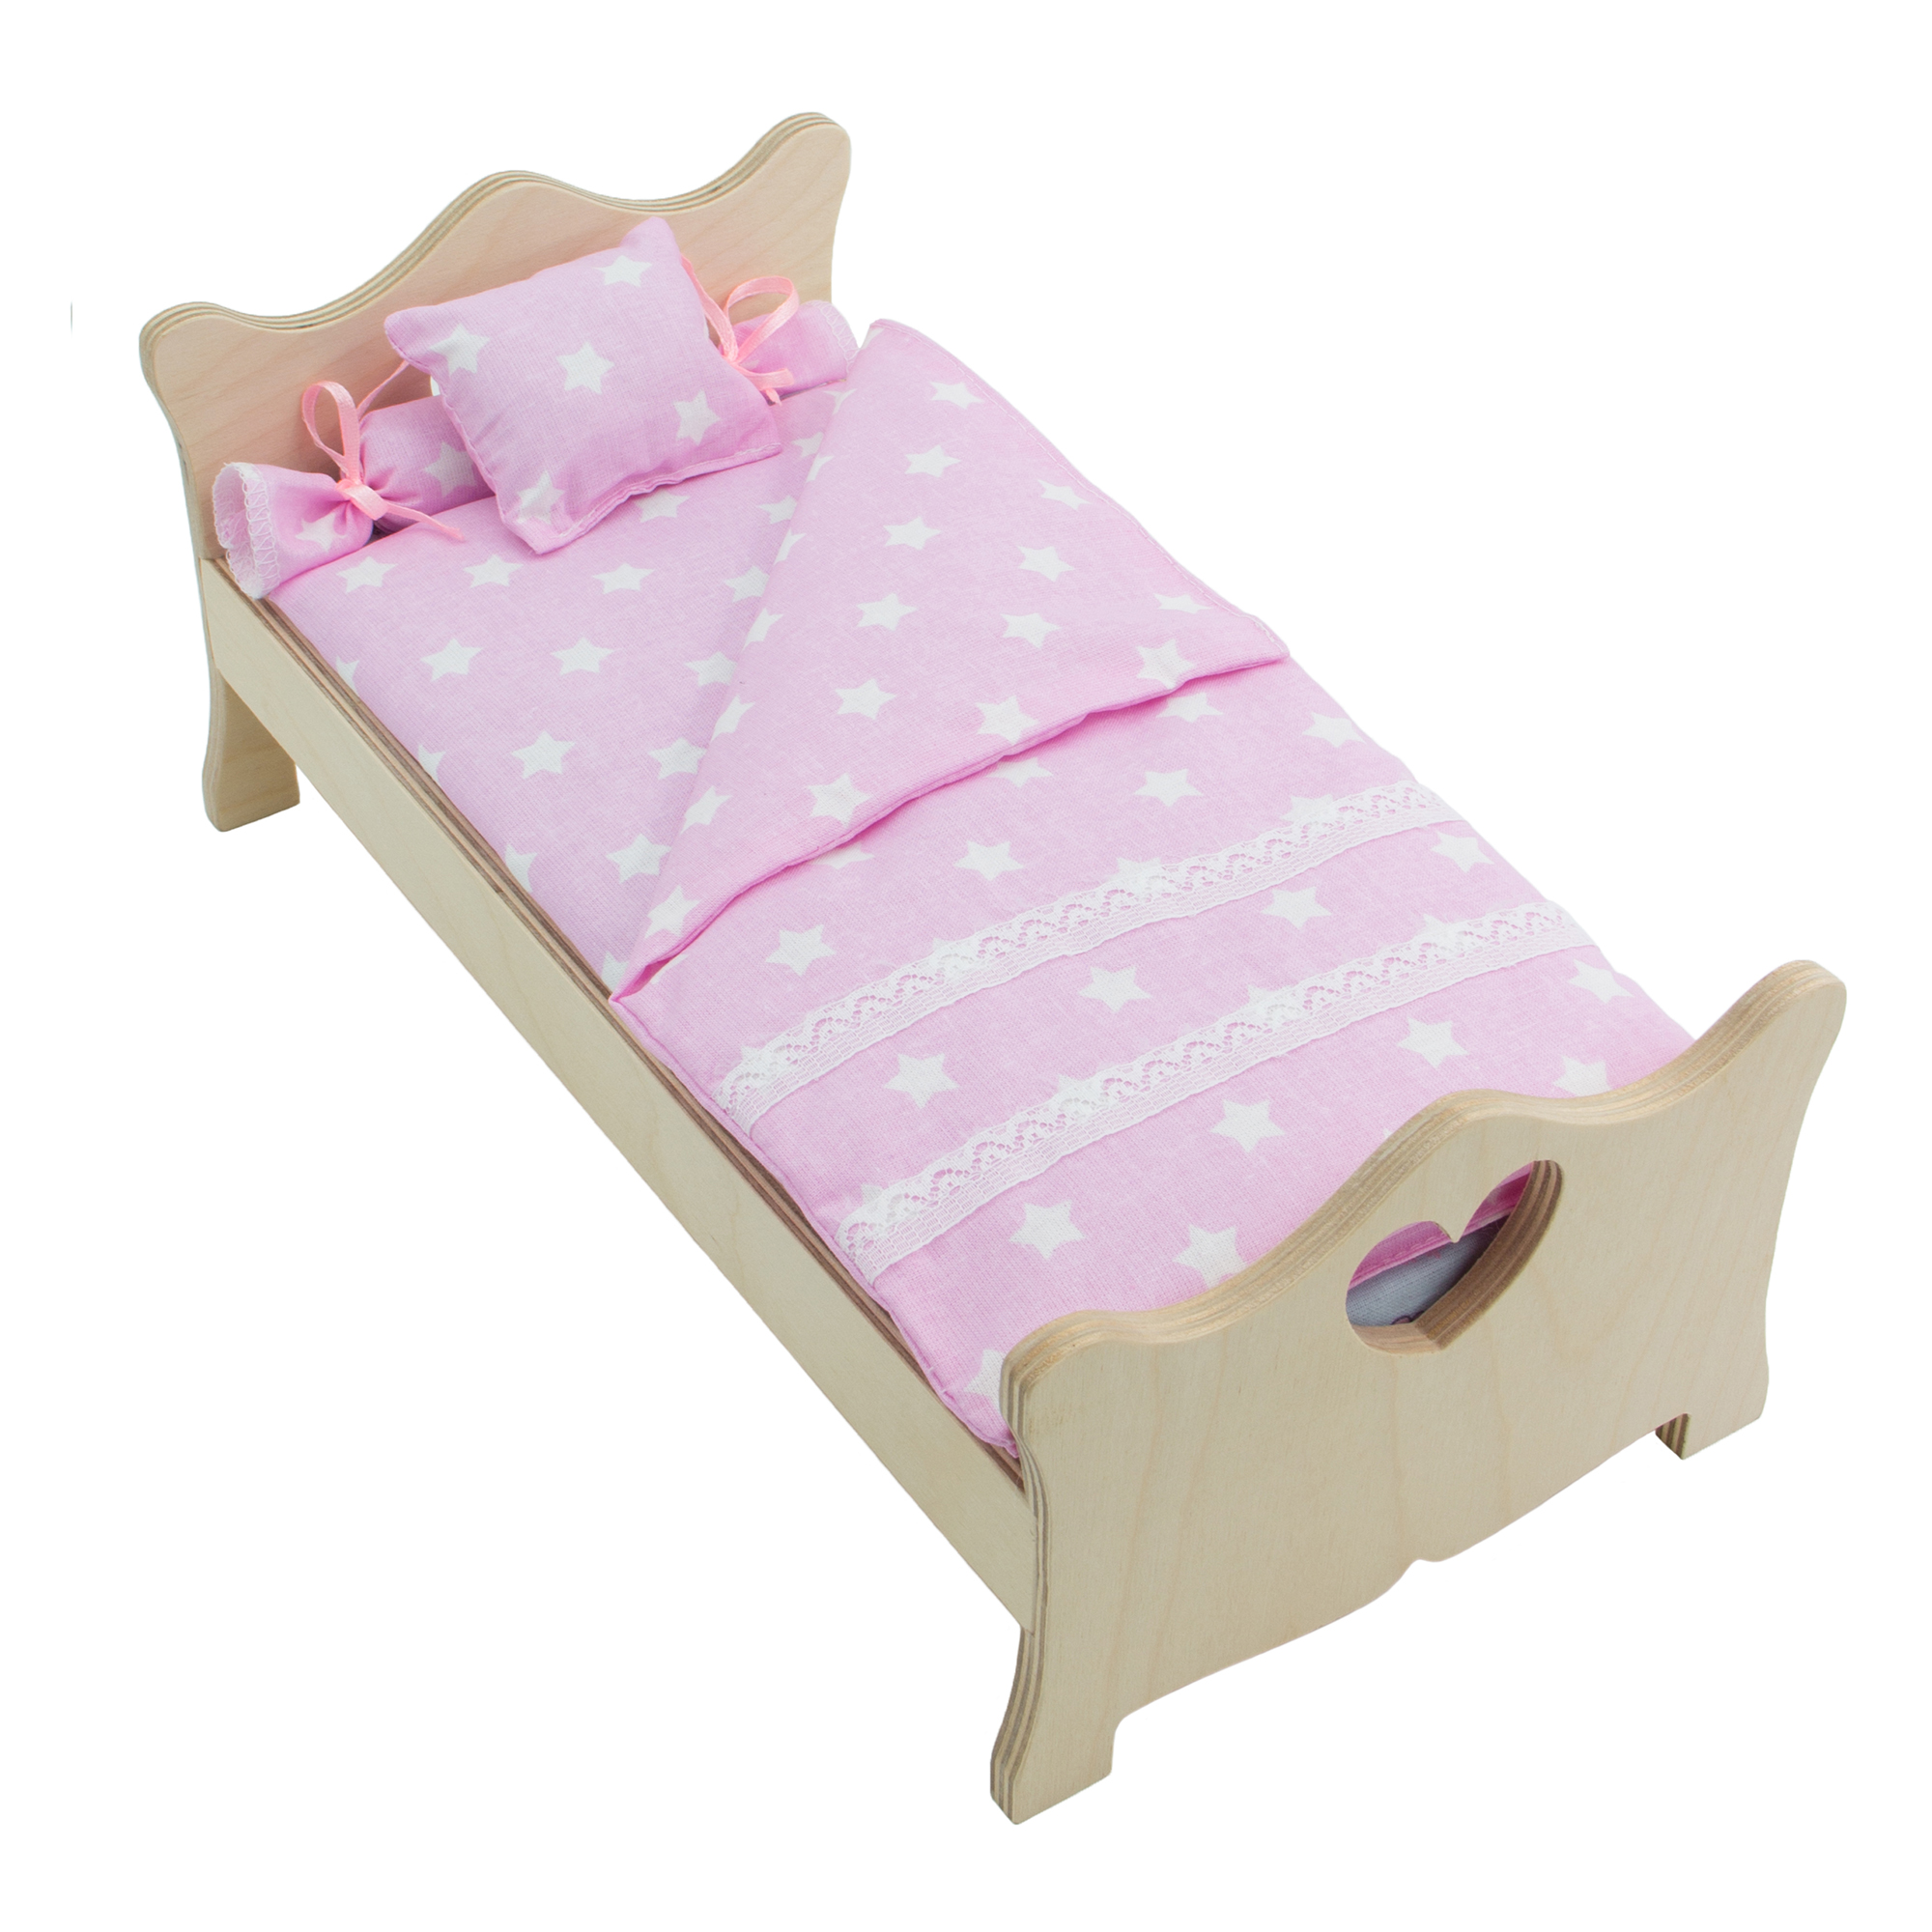 Комлпект постельного белья Модница для куклы 29 см светло-розовый 2002светло-розовый - фото 3